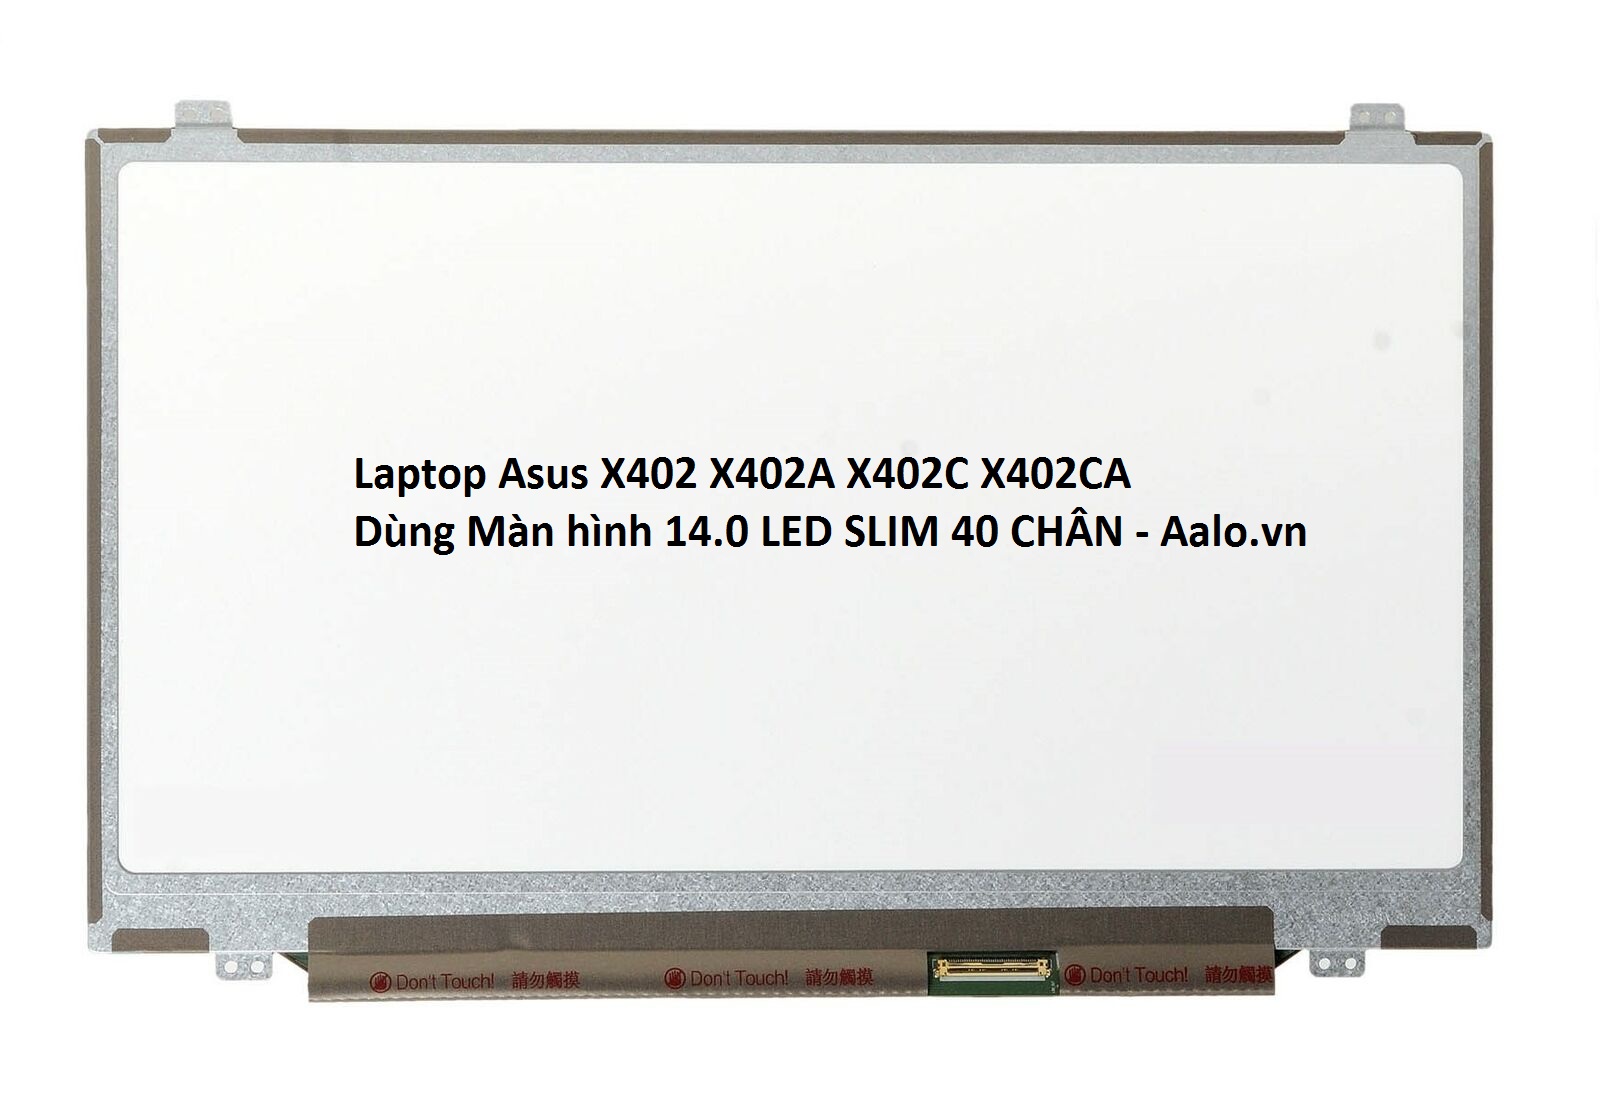 Màn hình Laptop Asus X402 X402A X402C X402CA - Aalo.vn